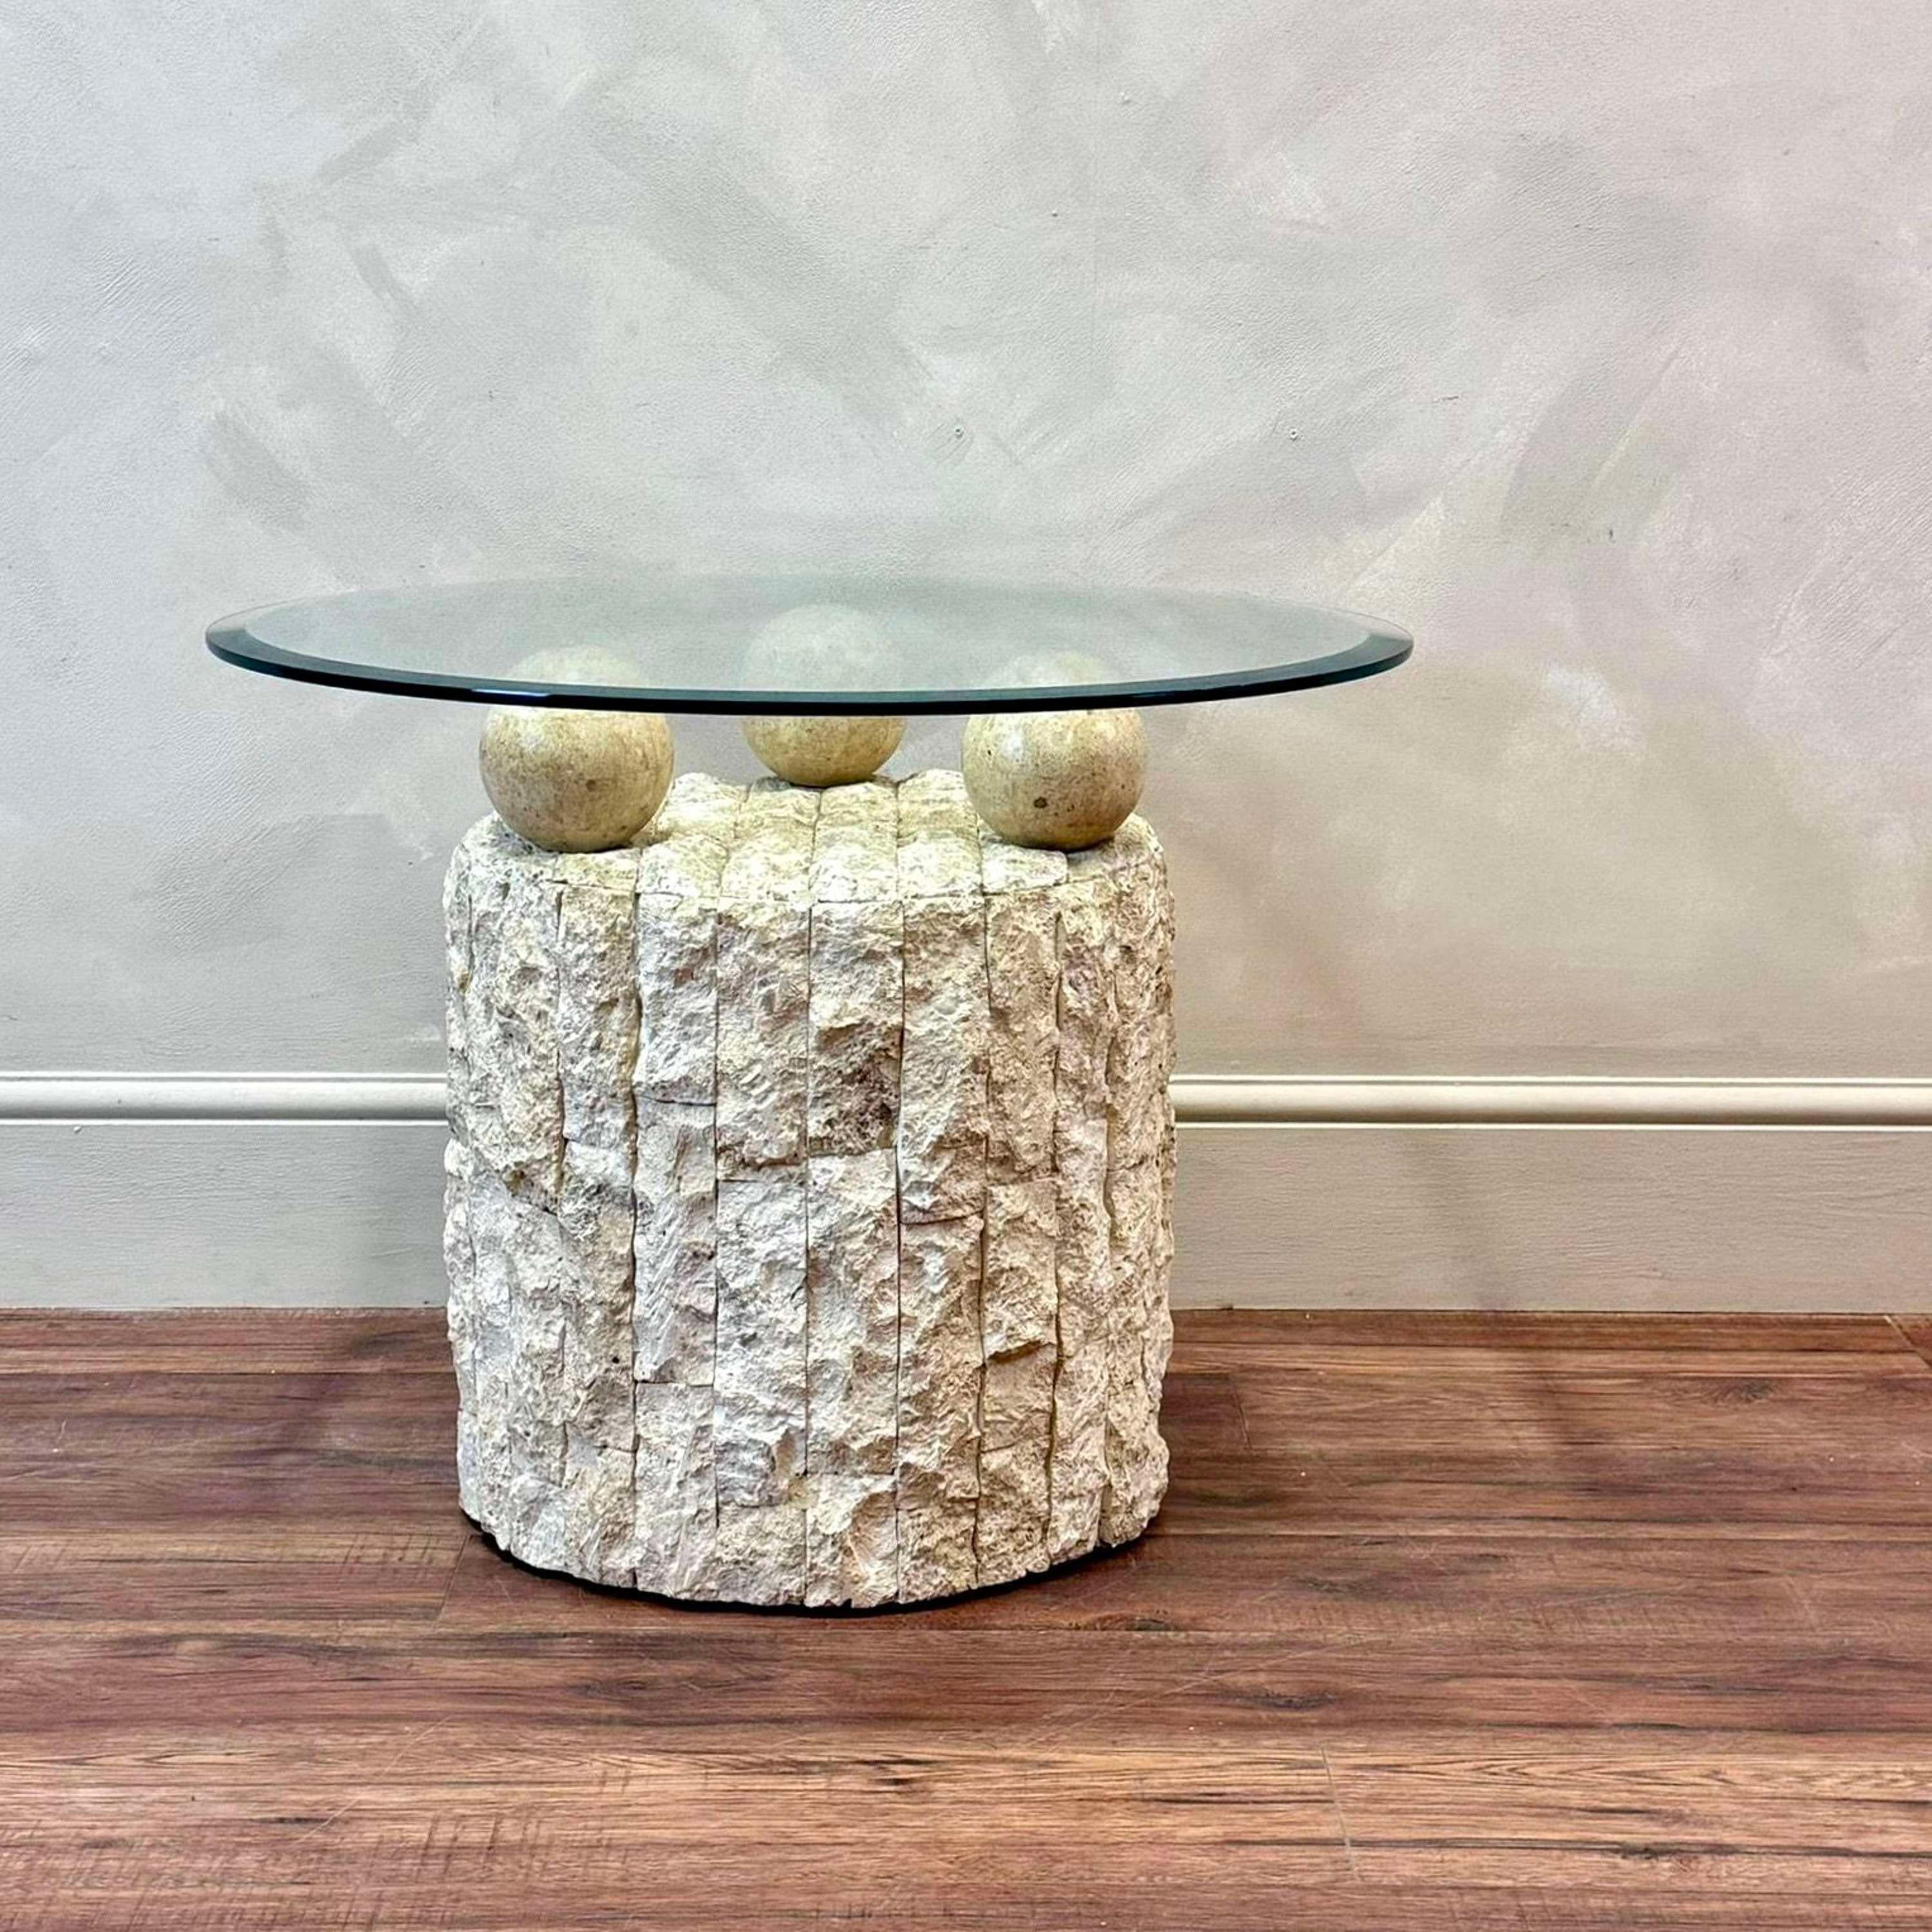 Design/One postmoderne, table basse / d'appoint par Magnusse Ponte. 
La base est en pierre de Mactan.
Trois boules de pierre soutiennent le plateau en verre rond amovible à bords biseautés.

Circa 1980.

Dimensions:H : 53.5cm (21.1